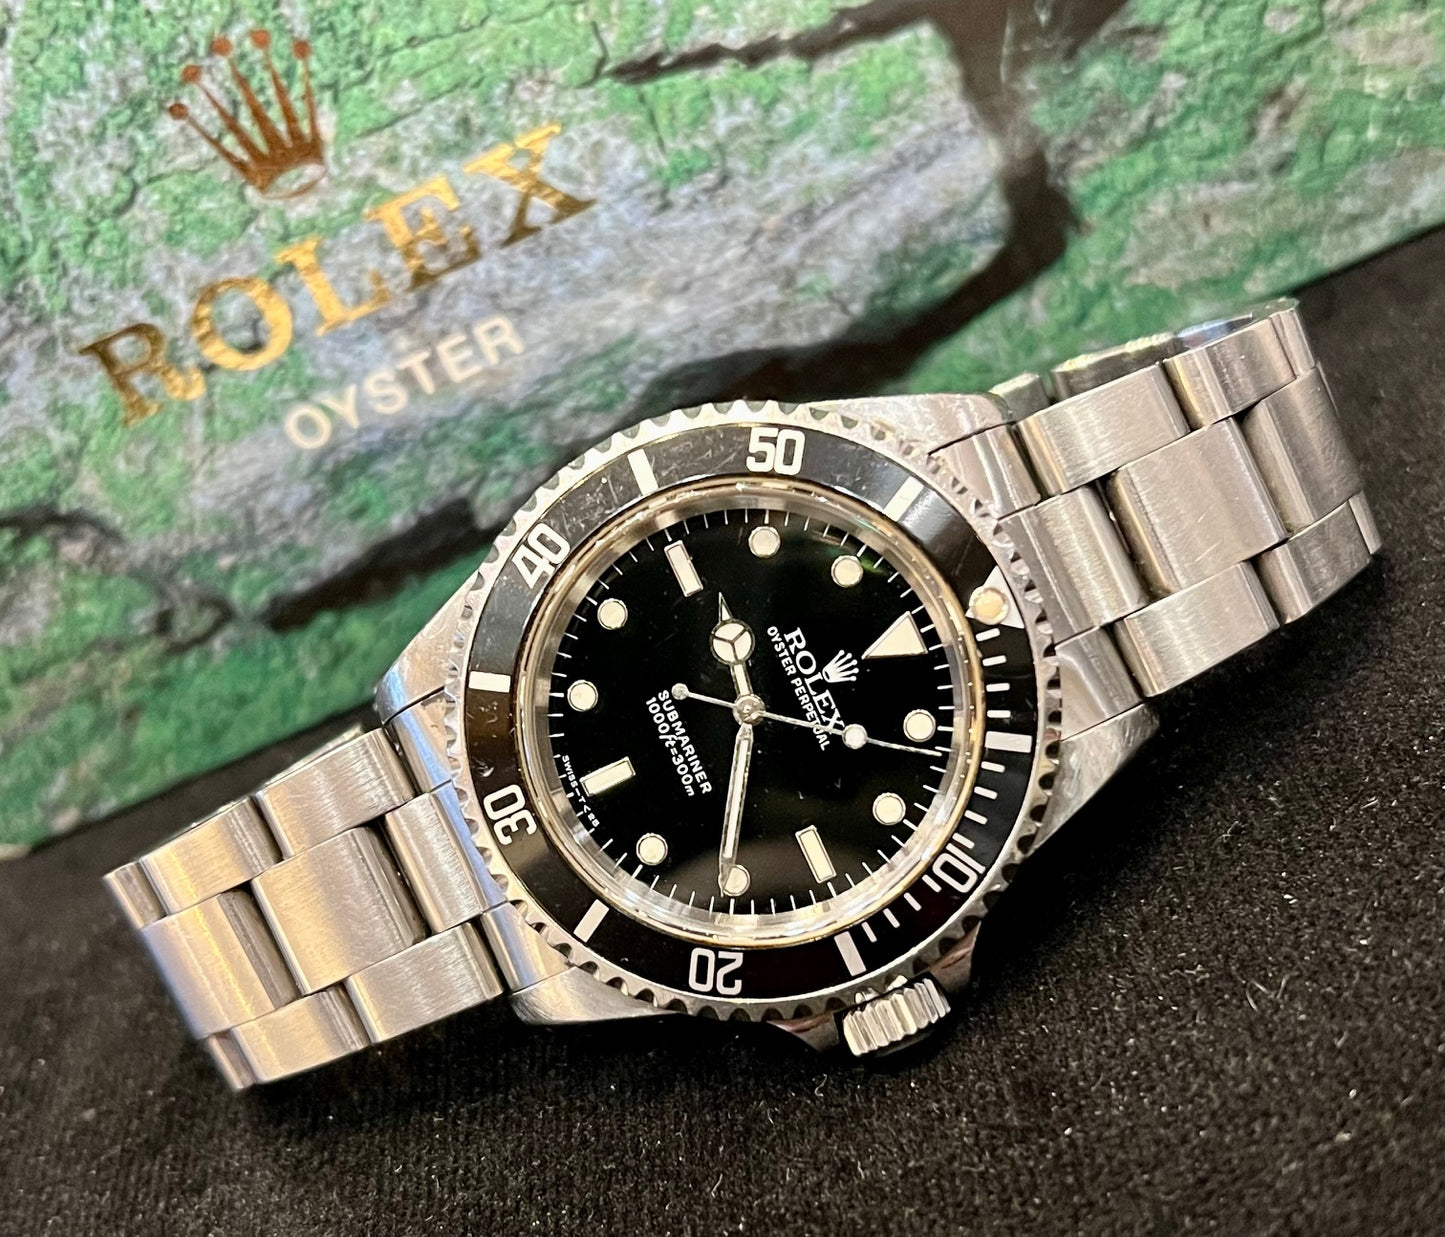 Rolex Submariner No date 14060 1995 only watch